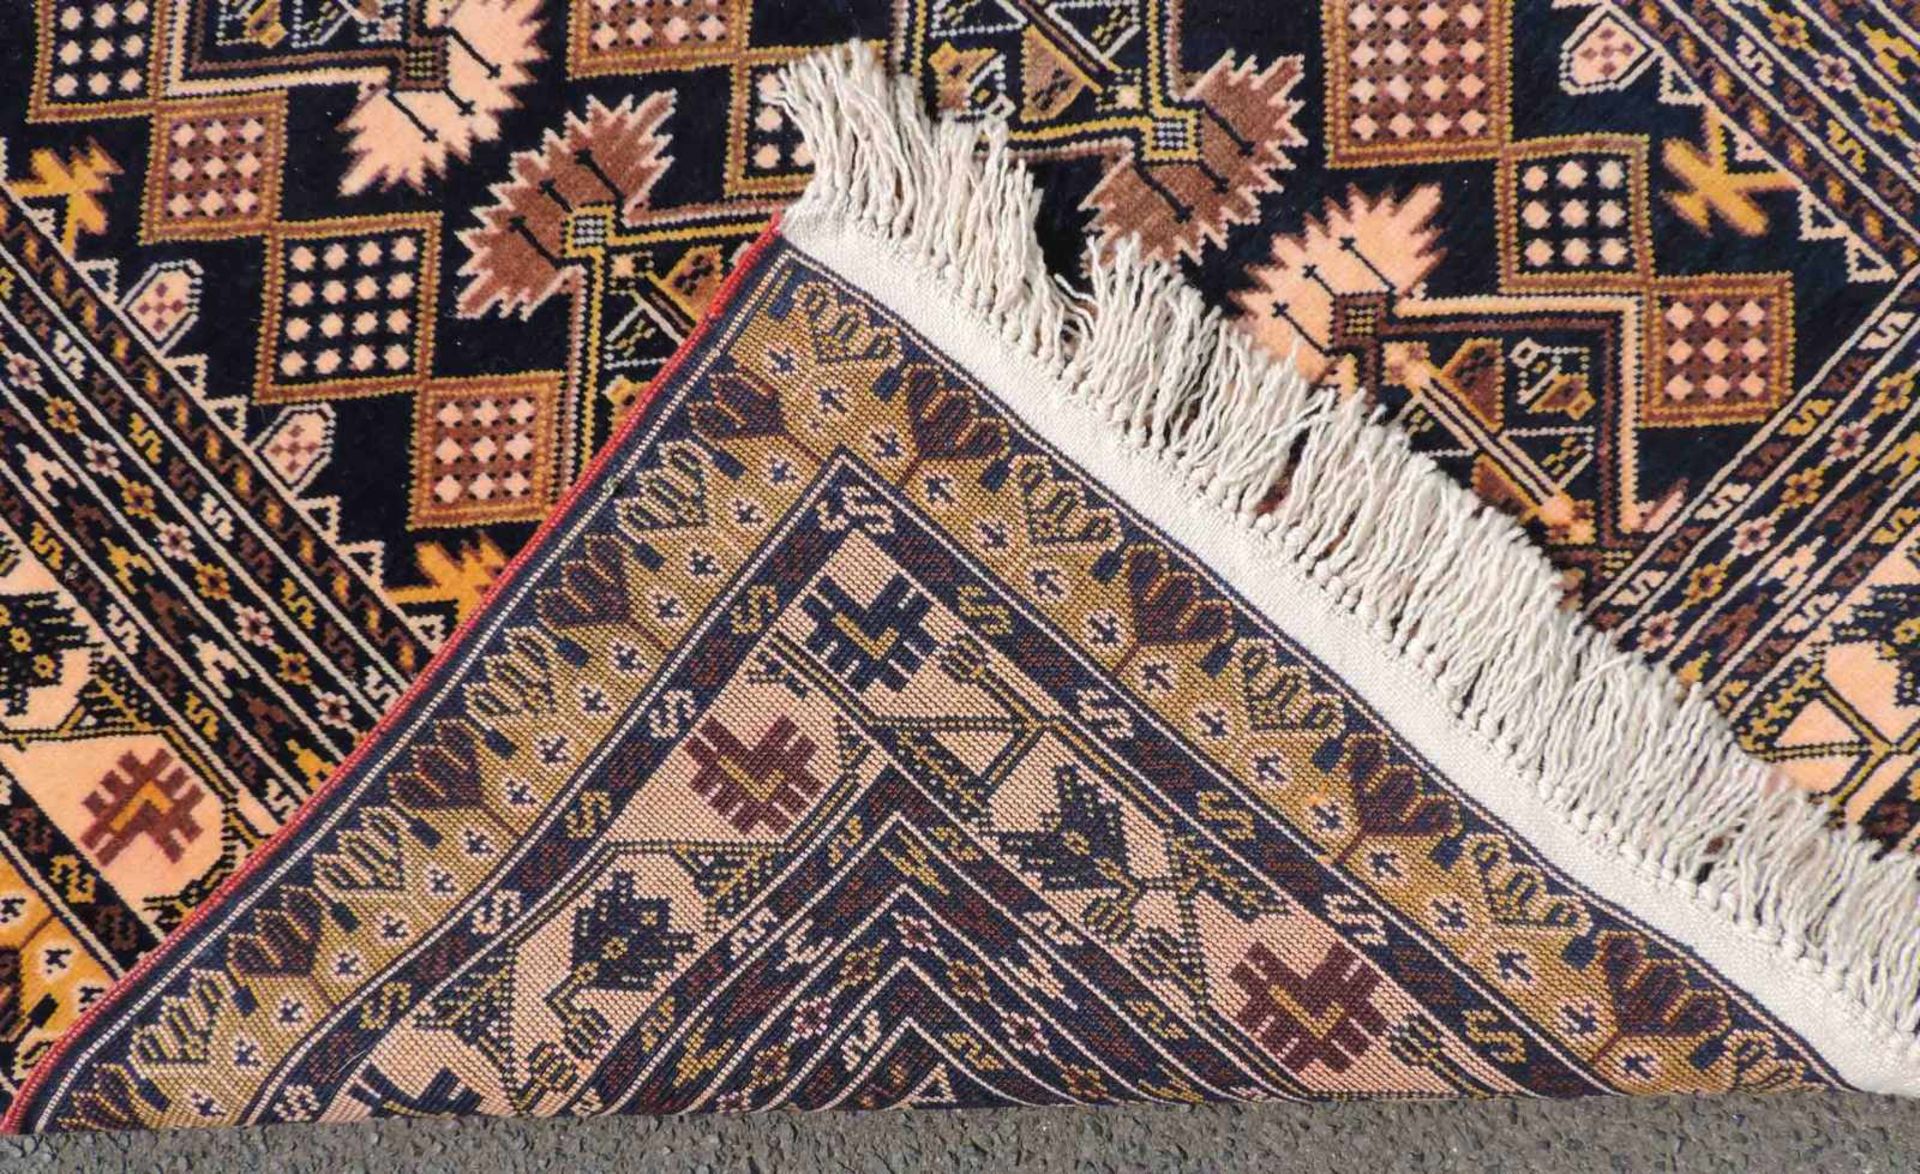 Mauri Stammesteppich. Afghanistan. Alt. Feine Knüpfung.145 cm x 93 cm. Handgeknüpft. Wolle auf - Bild 5 aus 6